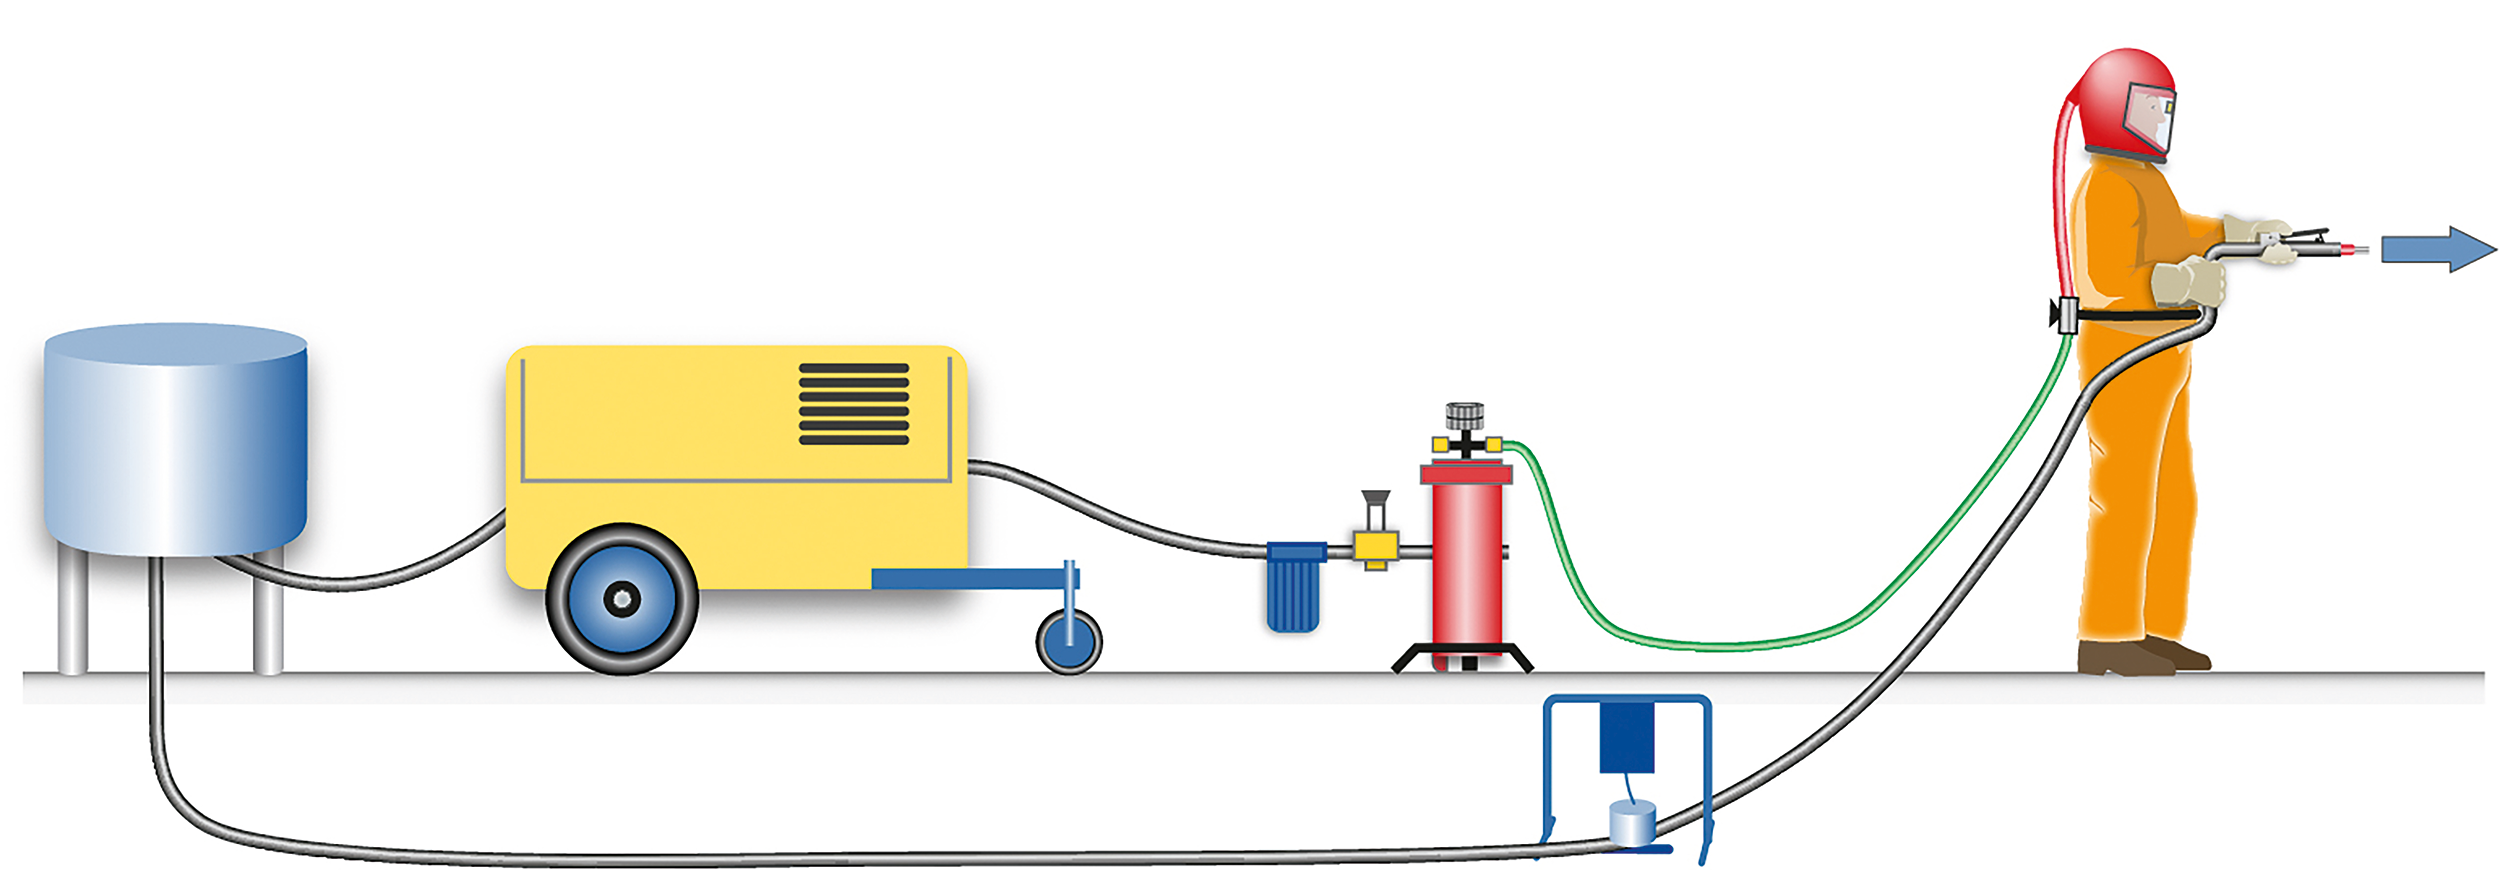 Grafik: Technische Komponenten zur Atemluftversorgung mit mobilen Systemen bei Festkörperstrahlarbeiten